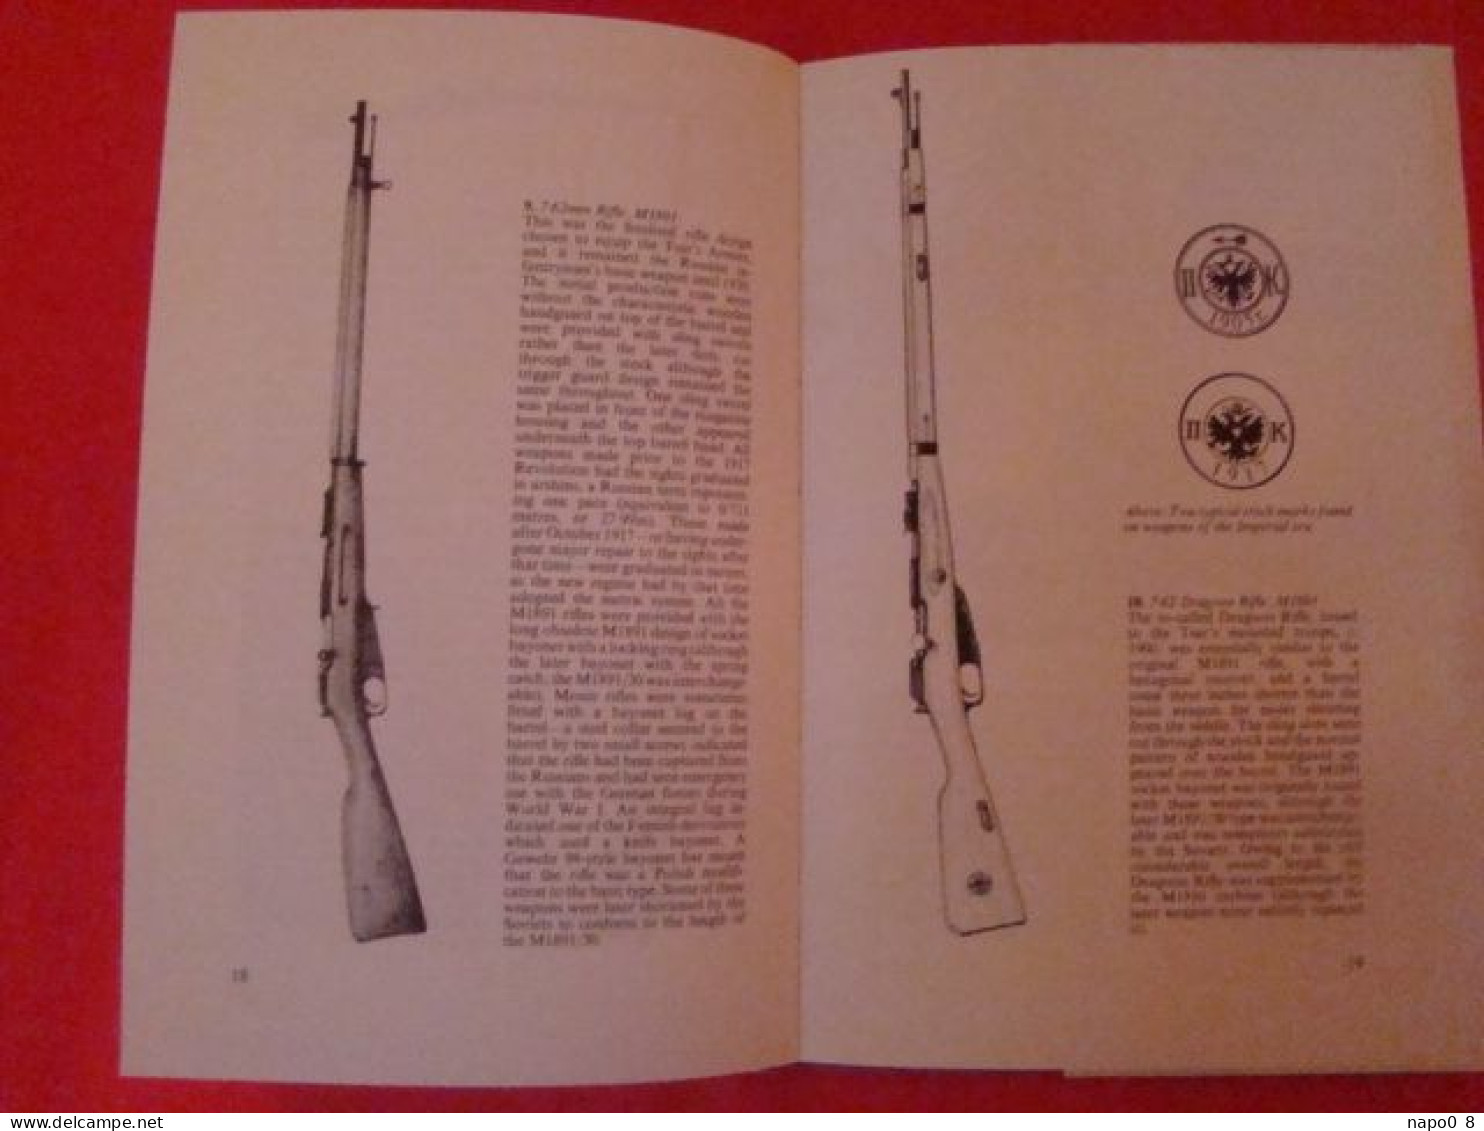 Russian Infantry Weapons Of World War 2 " AJ Barker & John Walter " - Engels